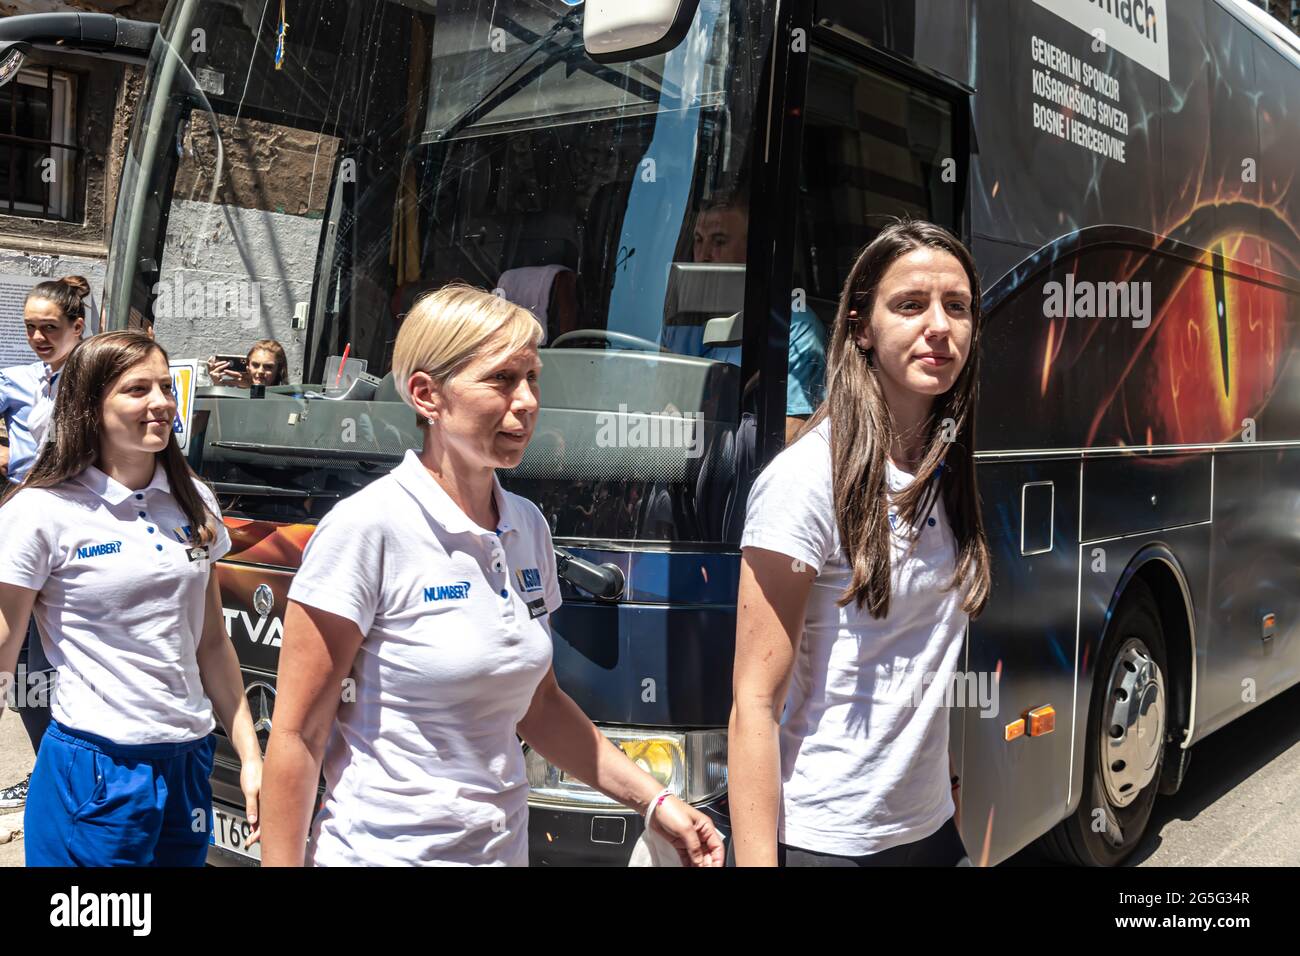 La squadra di pallacanestro femminile BH scende dall'autobus e arriva al municipio Foto Stock